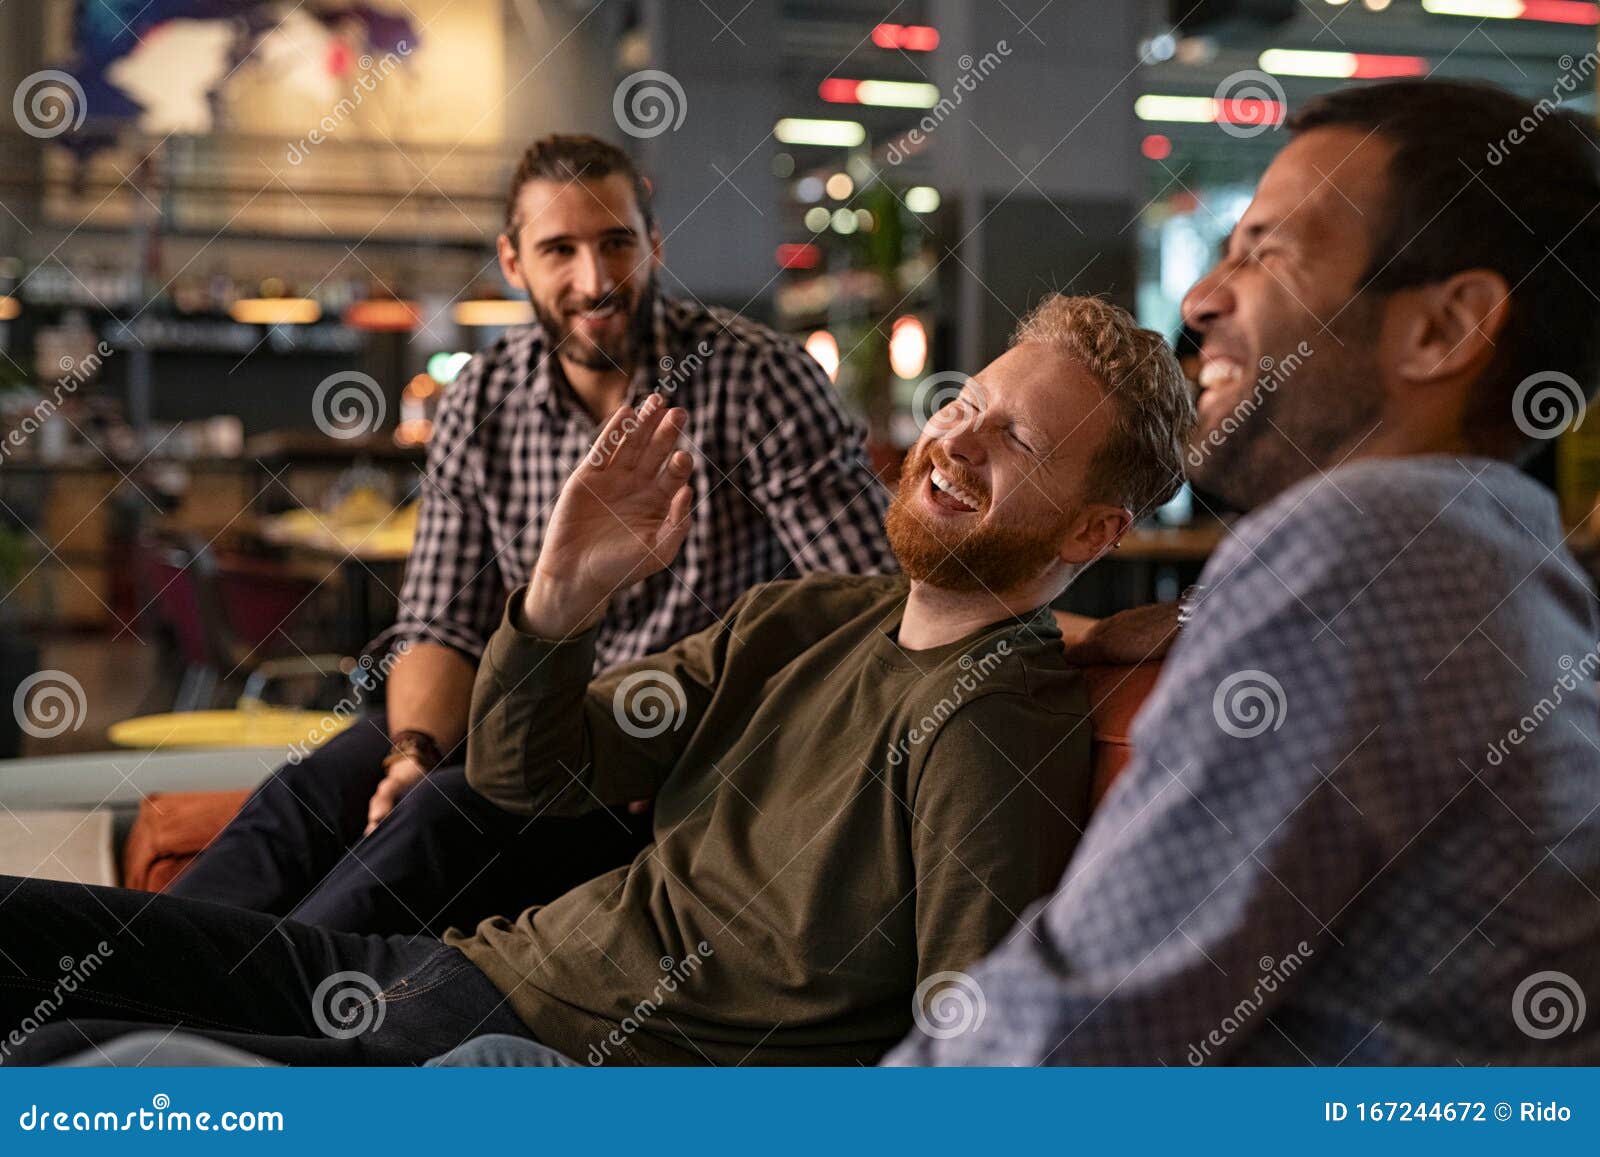 mid adult men friends enjoying at pub